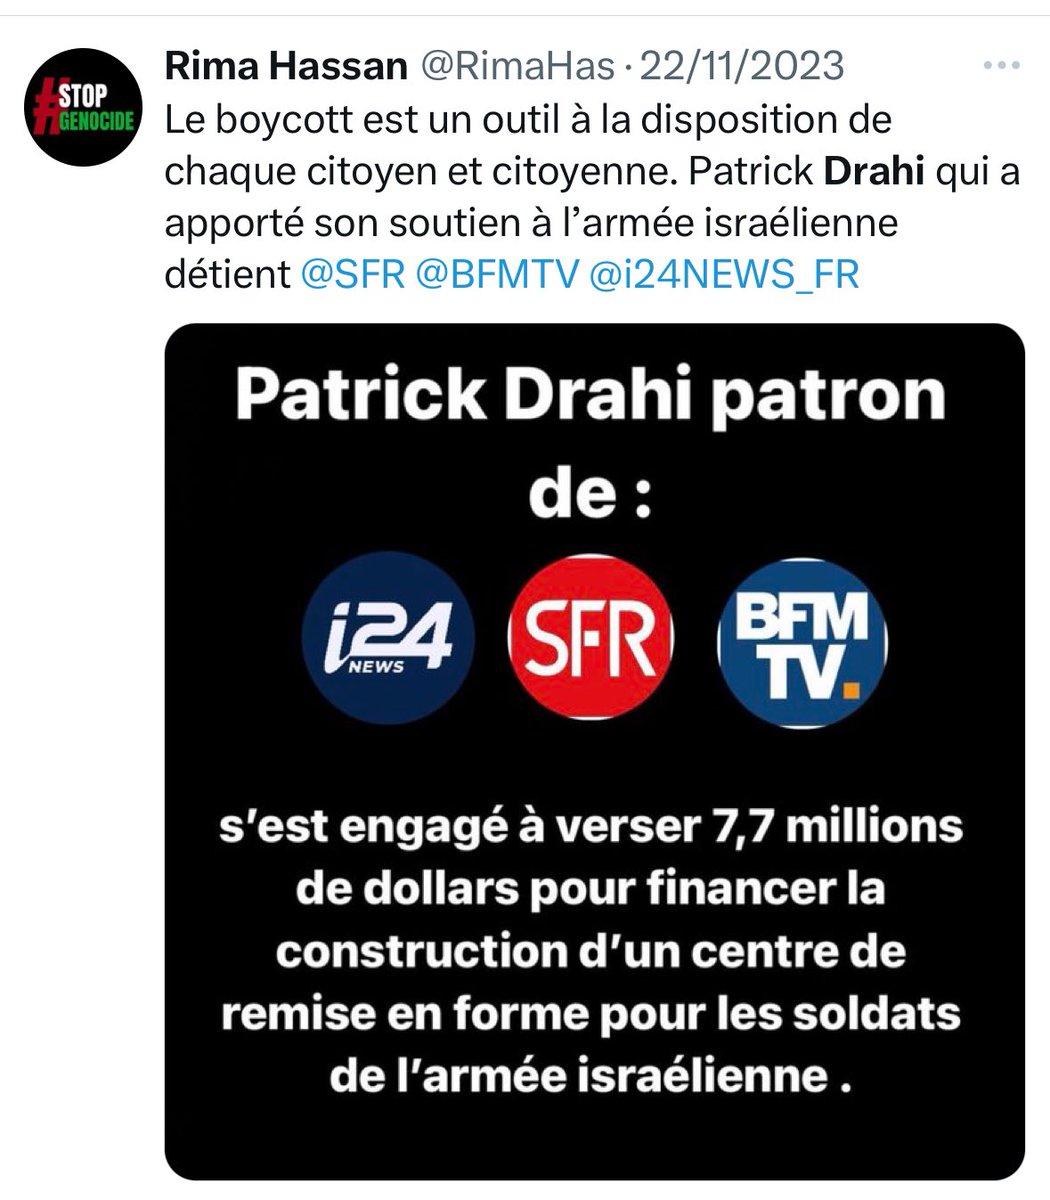 Donc Rima Hassan propose de boycotter Bouygues en réponse à l’interview de #Netanyahu sur TF1/LCI, demande aussi le boycott de SFR parce que tenu par un juif.

Demain, elle demandera le boycott d’Orange parce qu’il diffuse des séries israéliennes et Free parce qu’il opère en